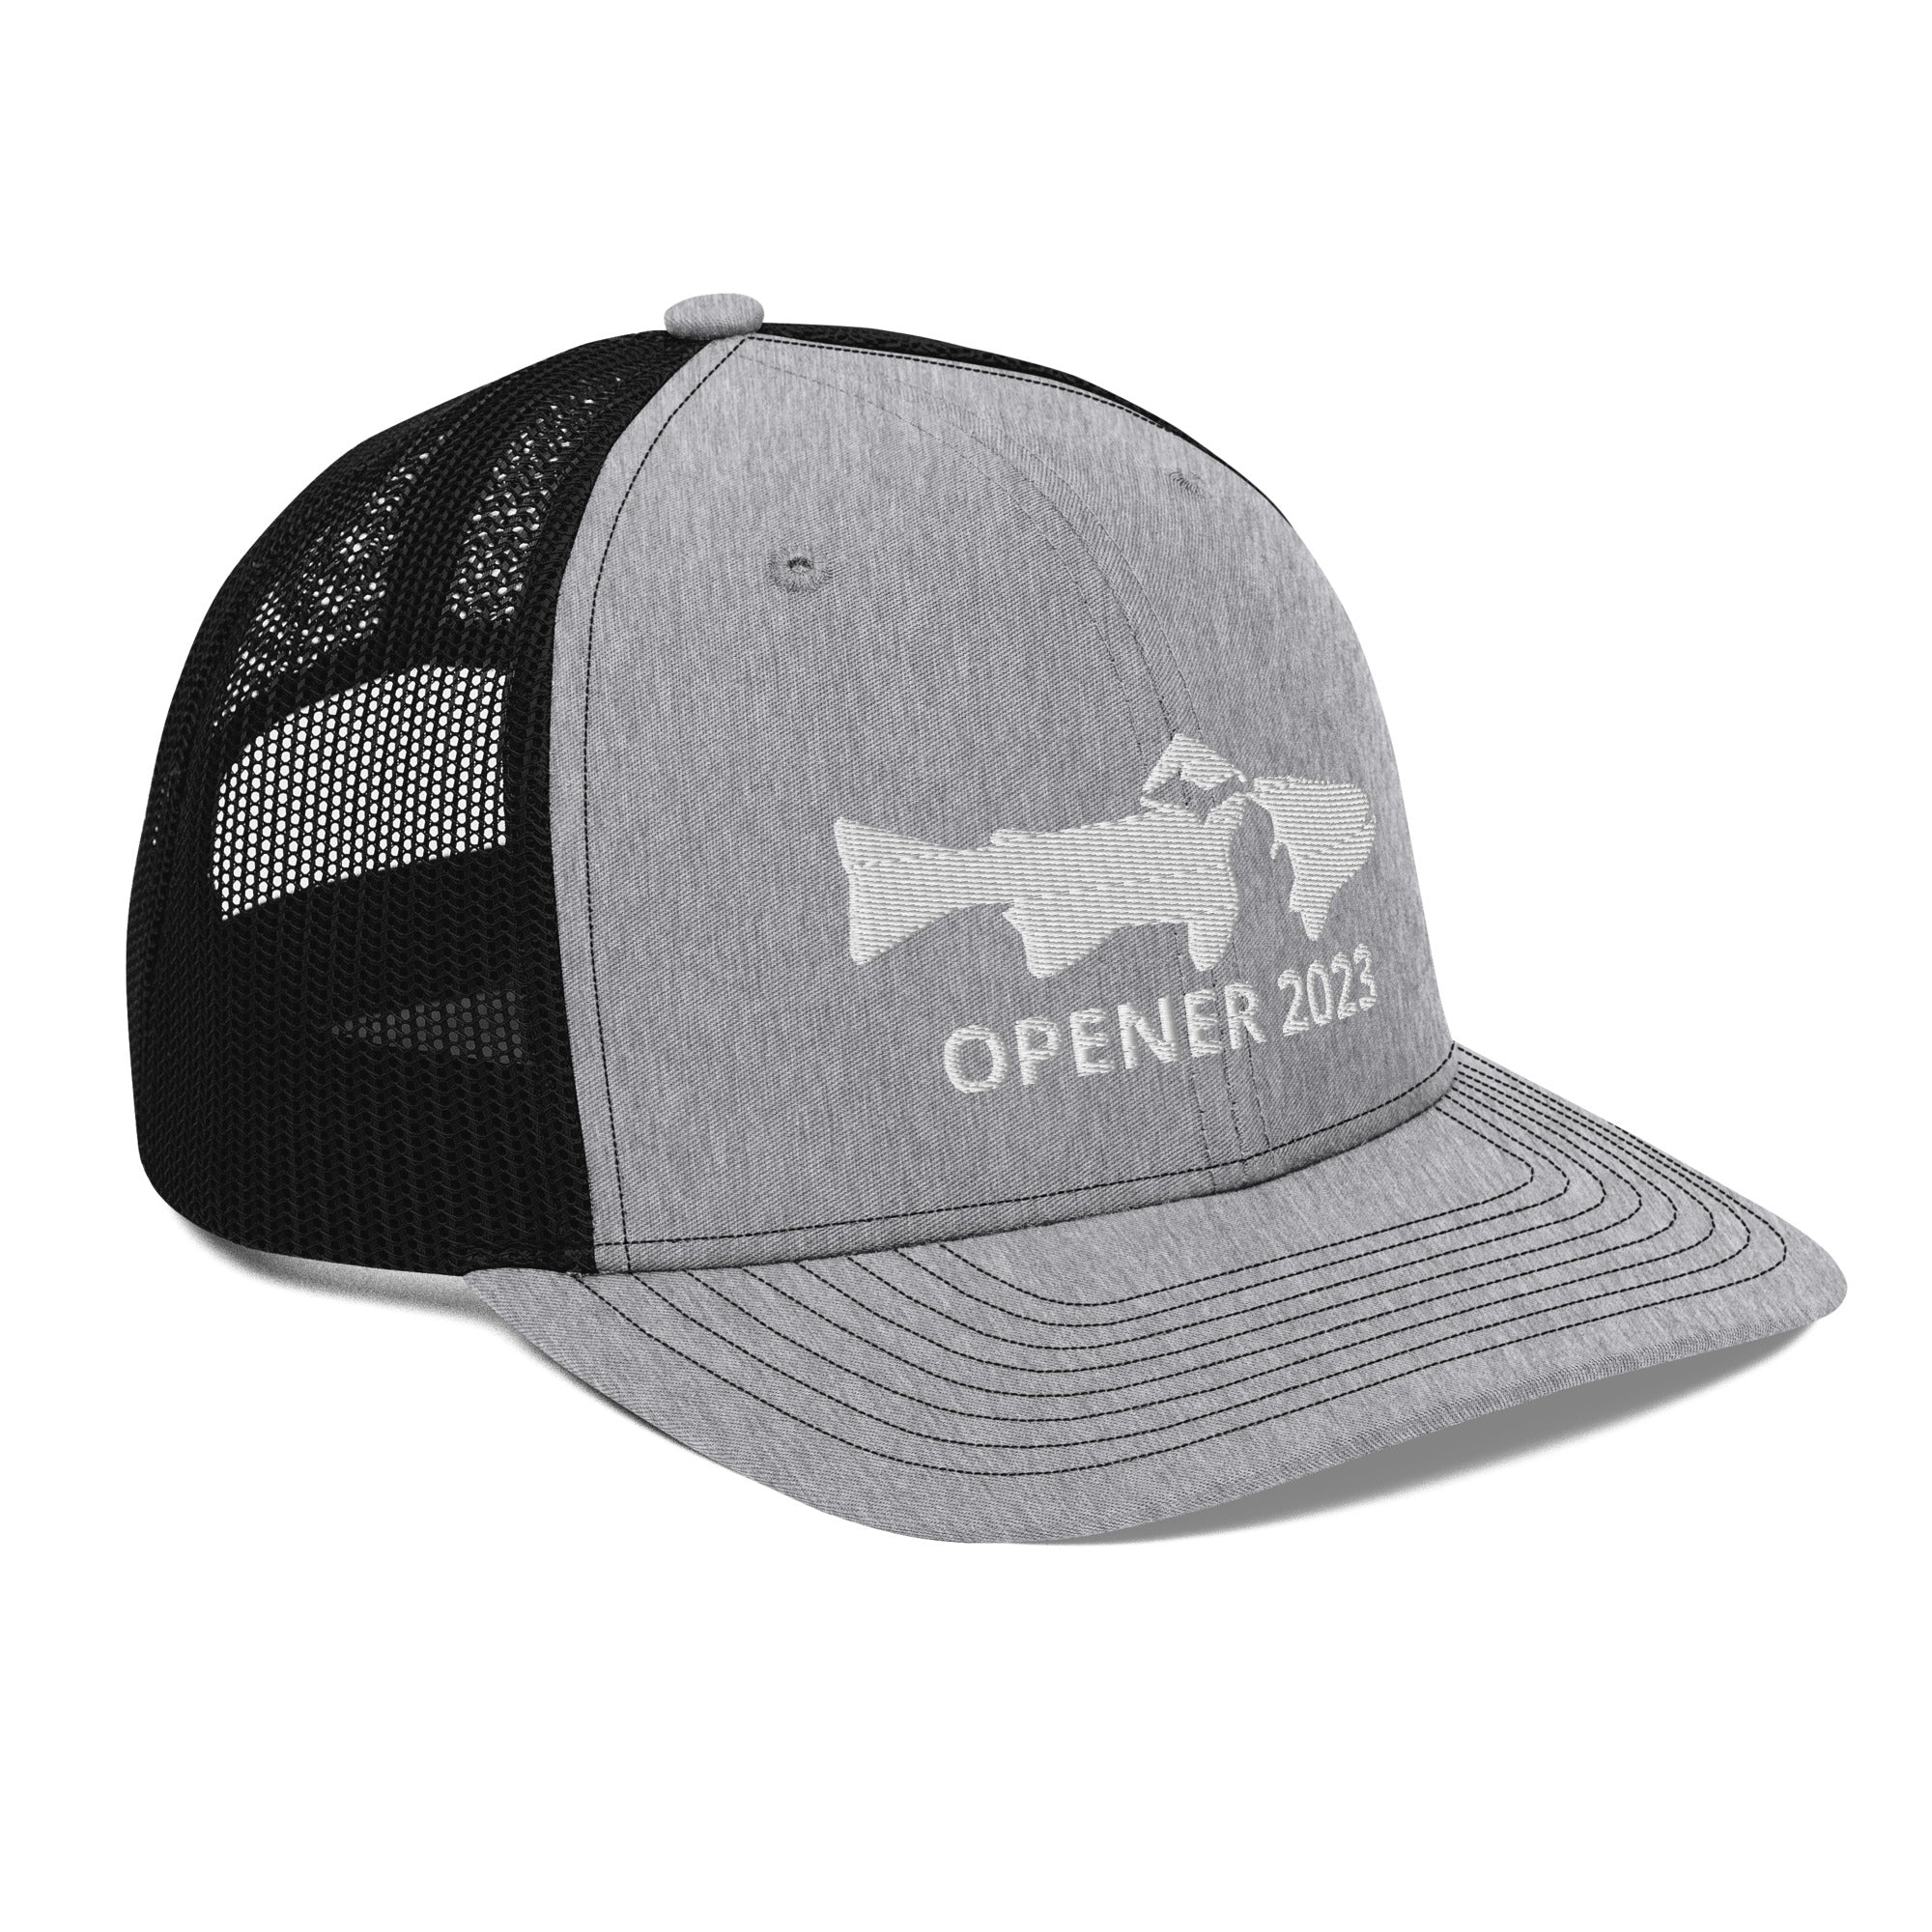 Opener 2023 Hat